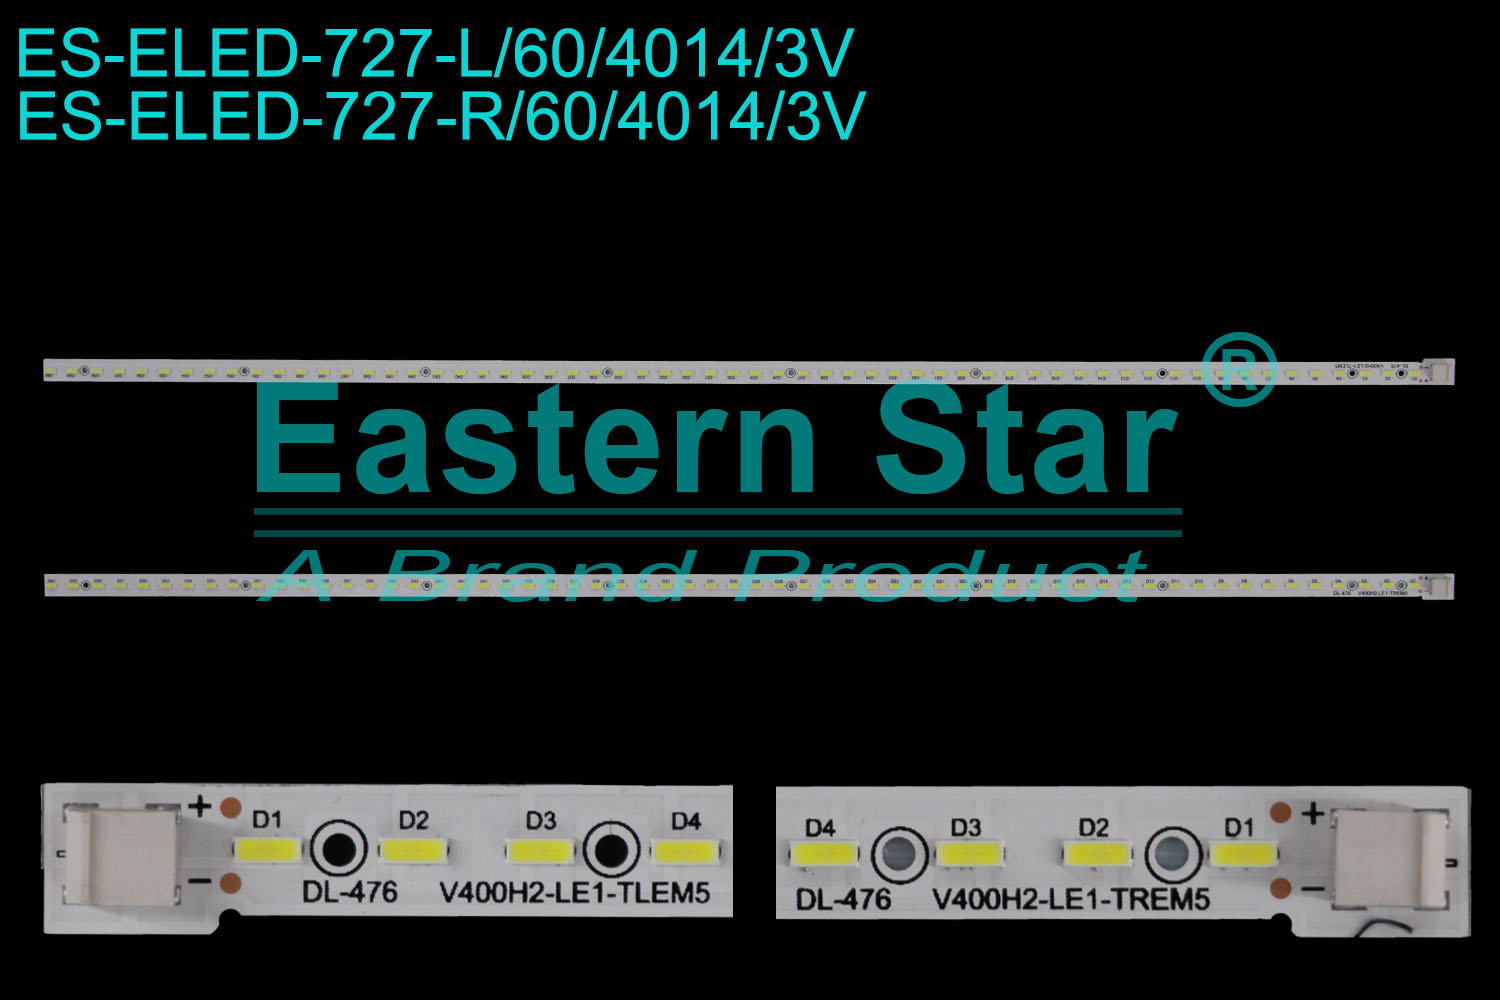 ES-ELED-727 ELED/EDGE TV backlight use for 40'' L:V400H2-LE1-TLEM5  R:V400H2-LE1-TREM5  LED STRIPS(2)